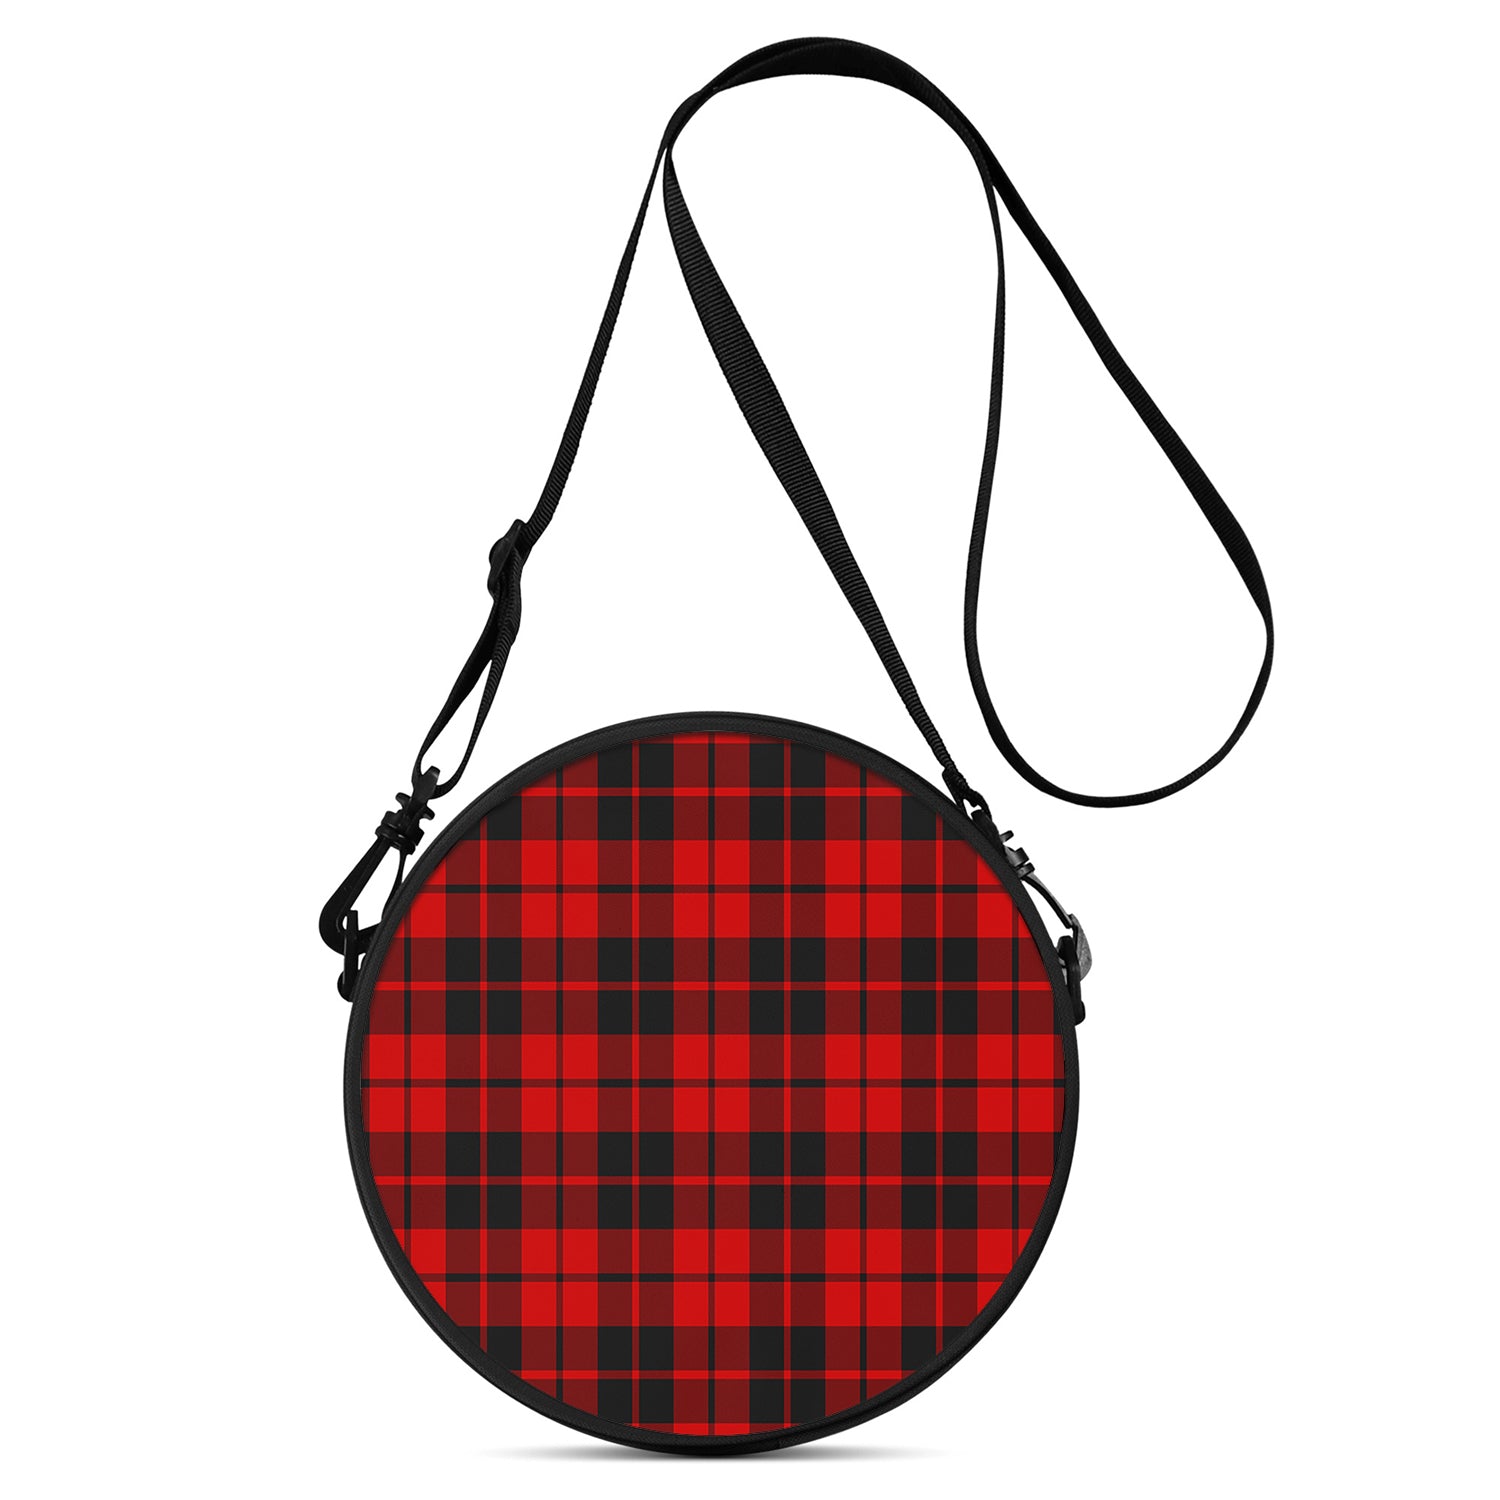 hogg-tartan-round-satchel-bags